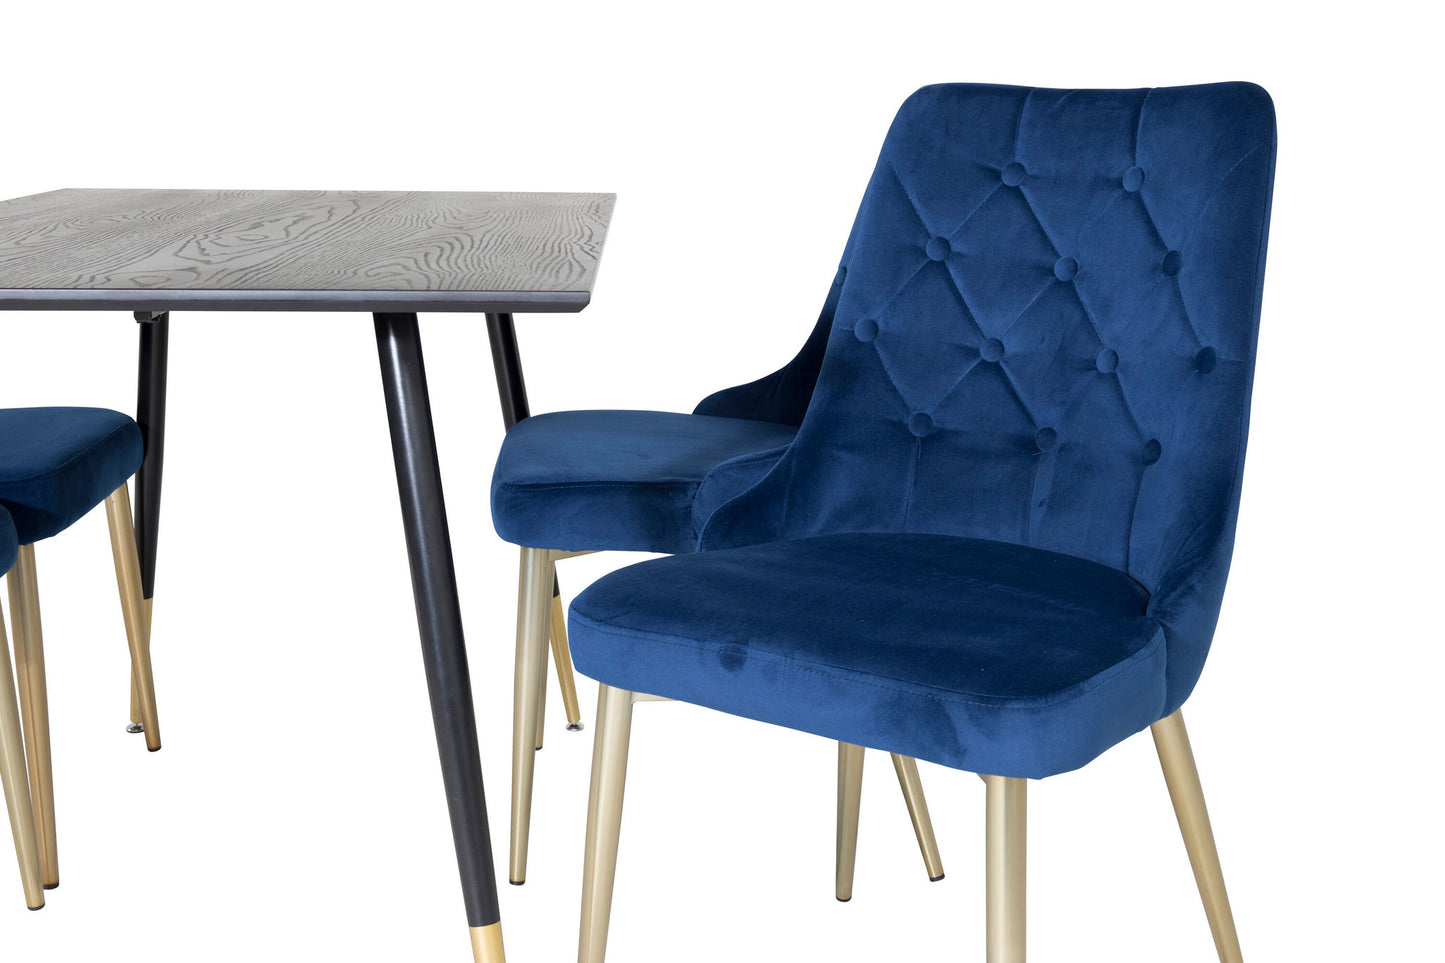 Dipp - Spisebord, 120 cm - Sort finér - Sorte ben m. Messing dipp+ velour Deluxe Spisebordsstol - Blå / Messing